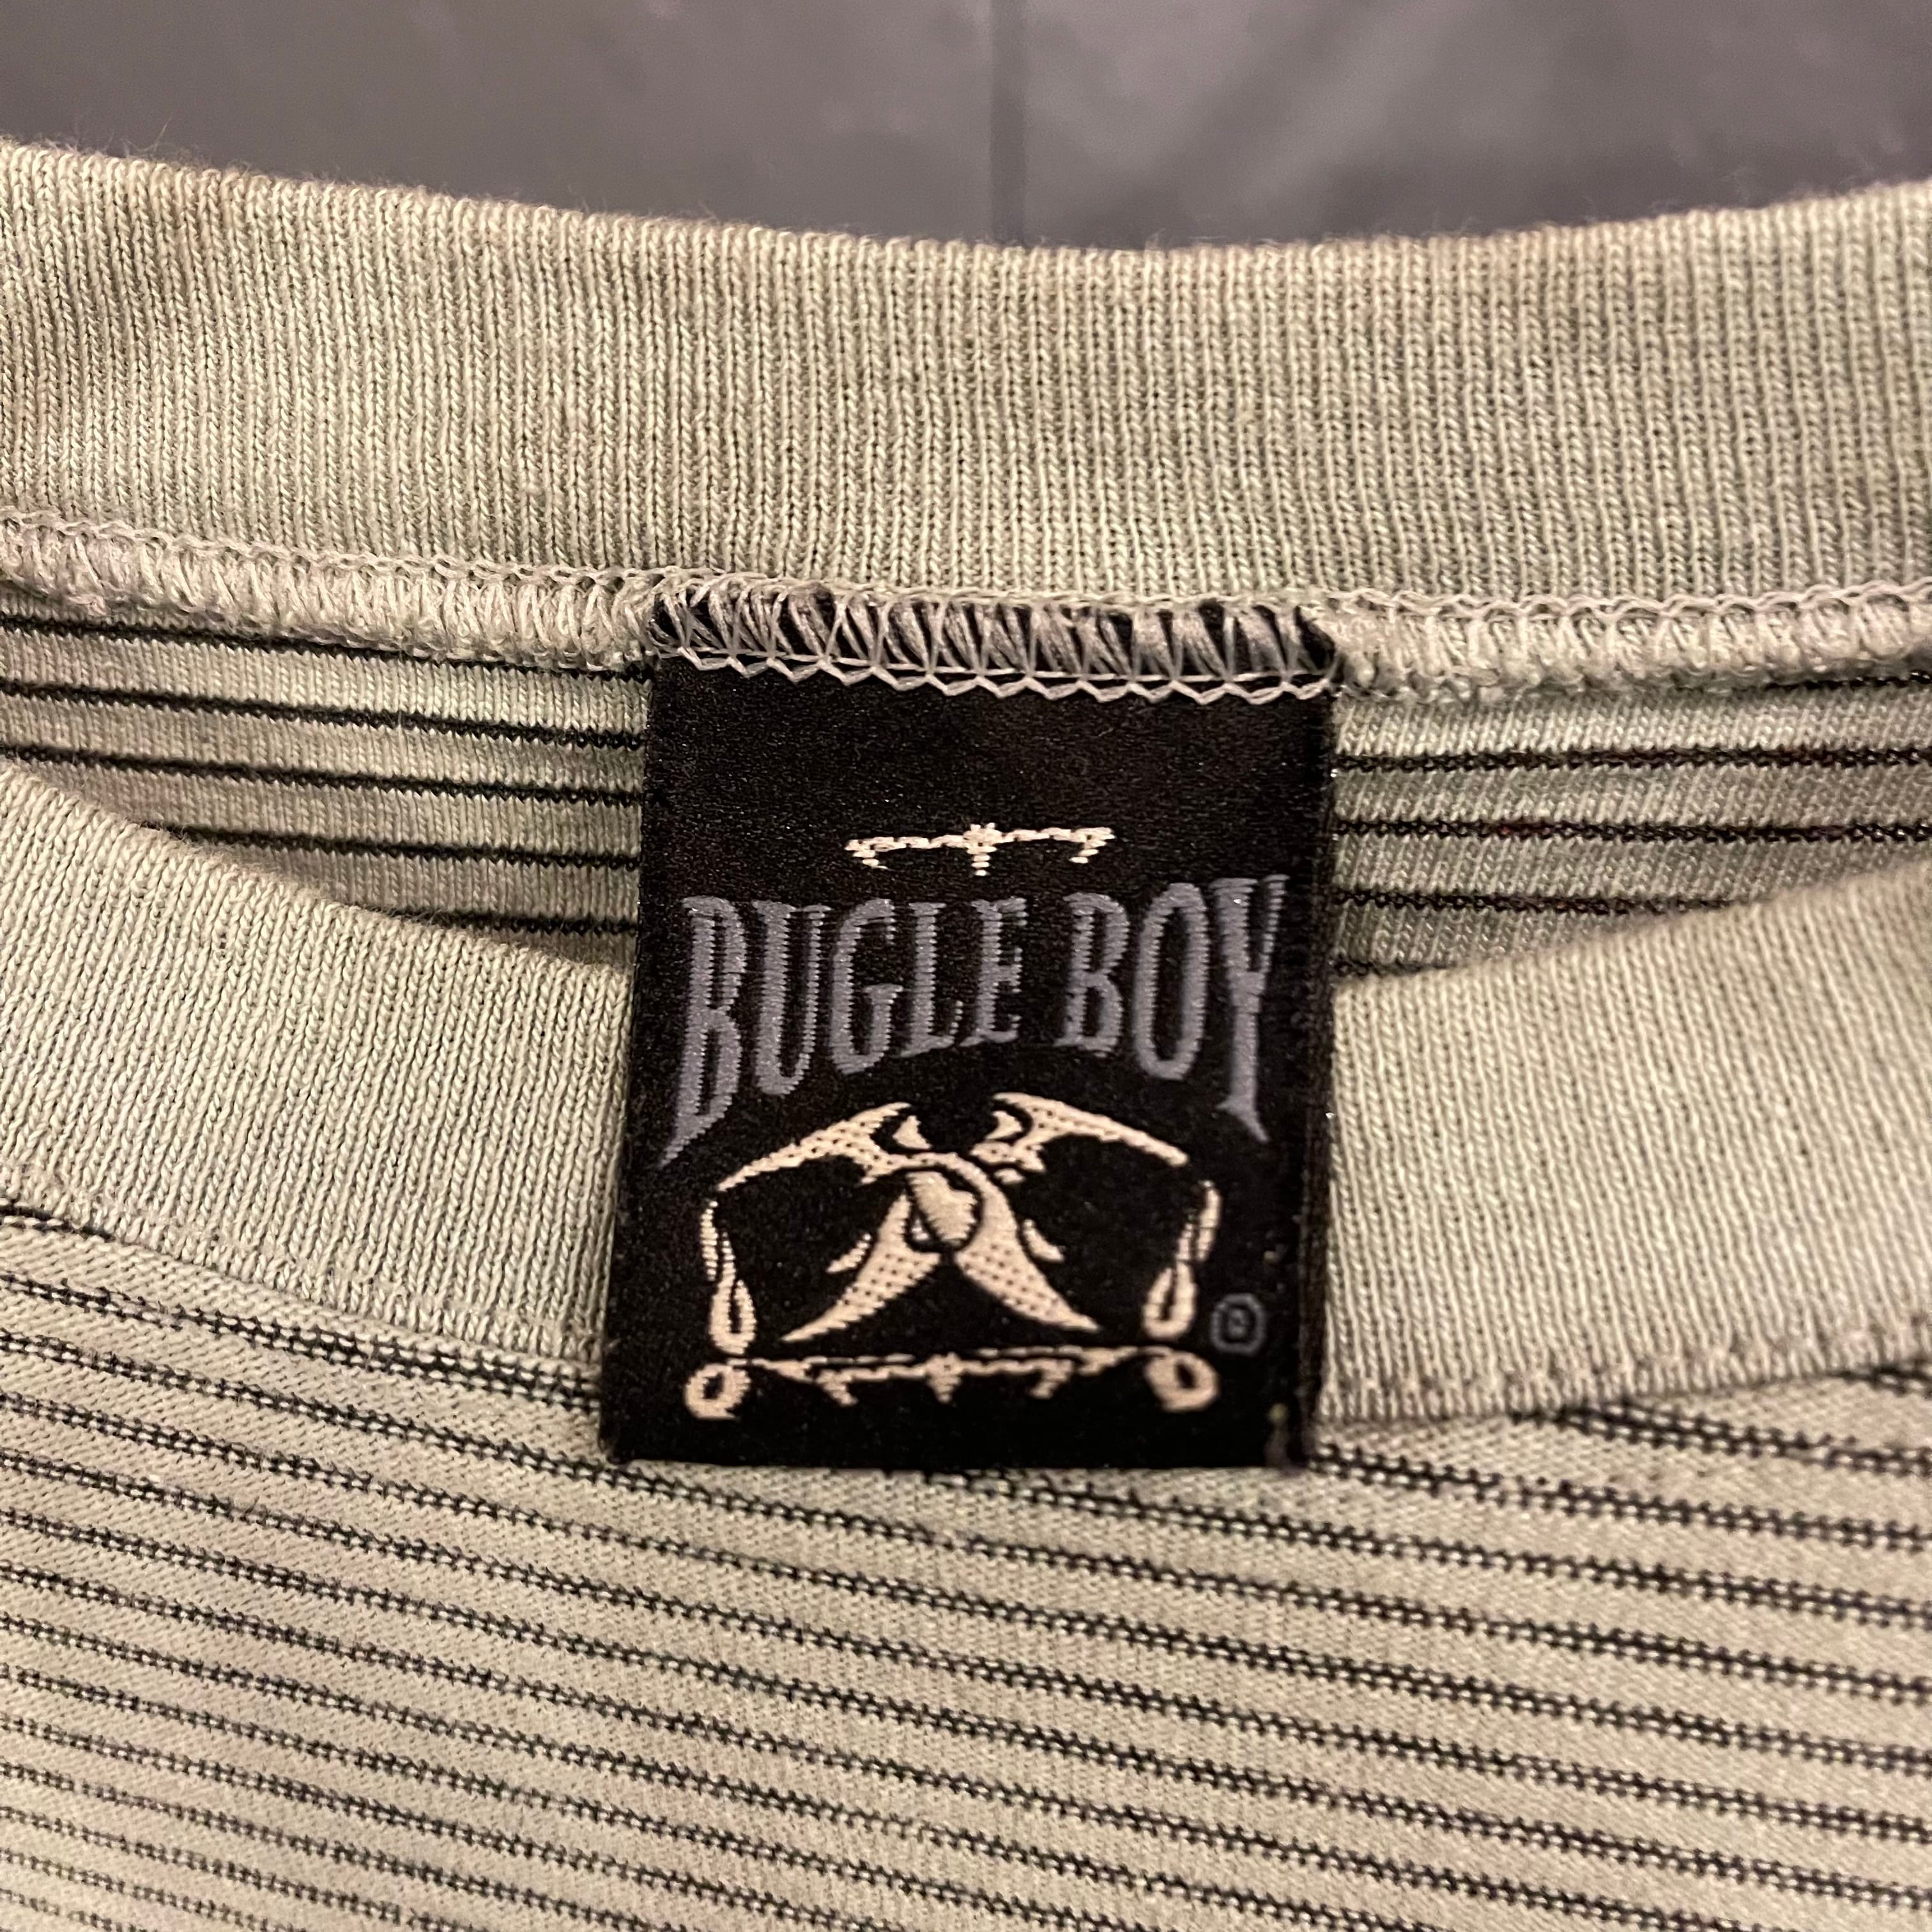 BUGLE BOY - マルチボーダー リンガーネック Tシャツ USA製